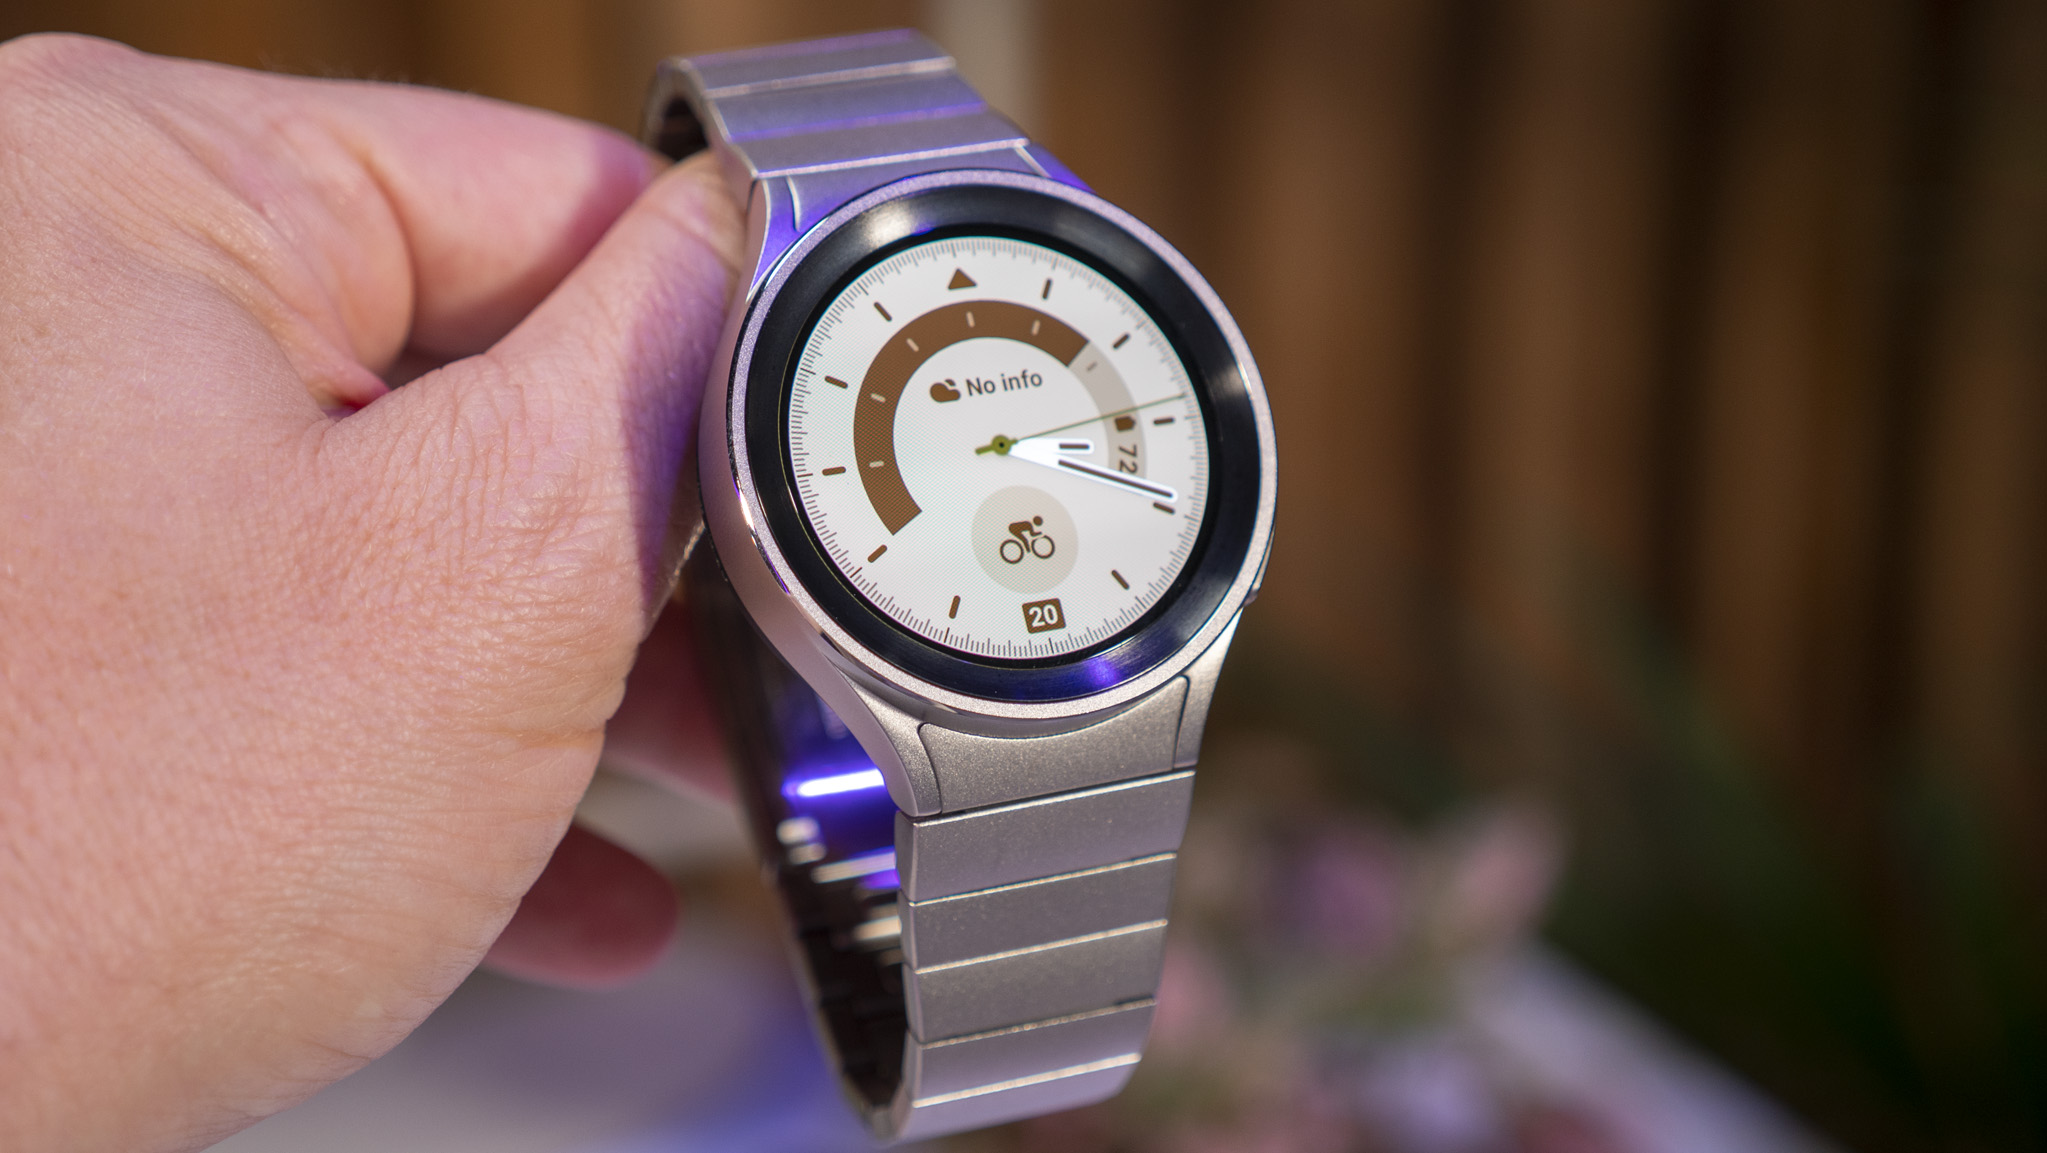 Samsung watch 1. Samsung watch 5 Pro. Samsung Galaxy watch 5. Samsung Galaxy watch 5 Pro. Самсунг watch 1.